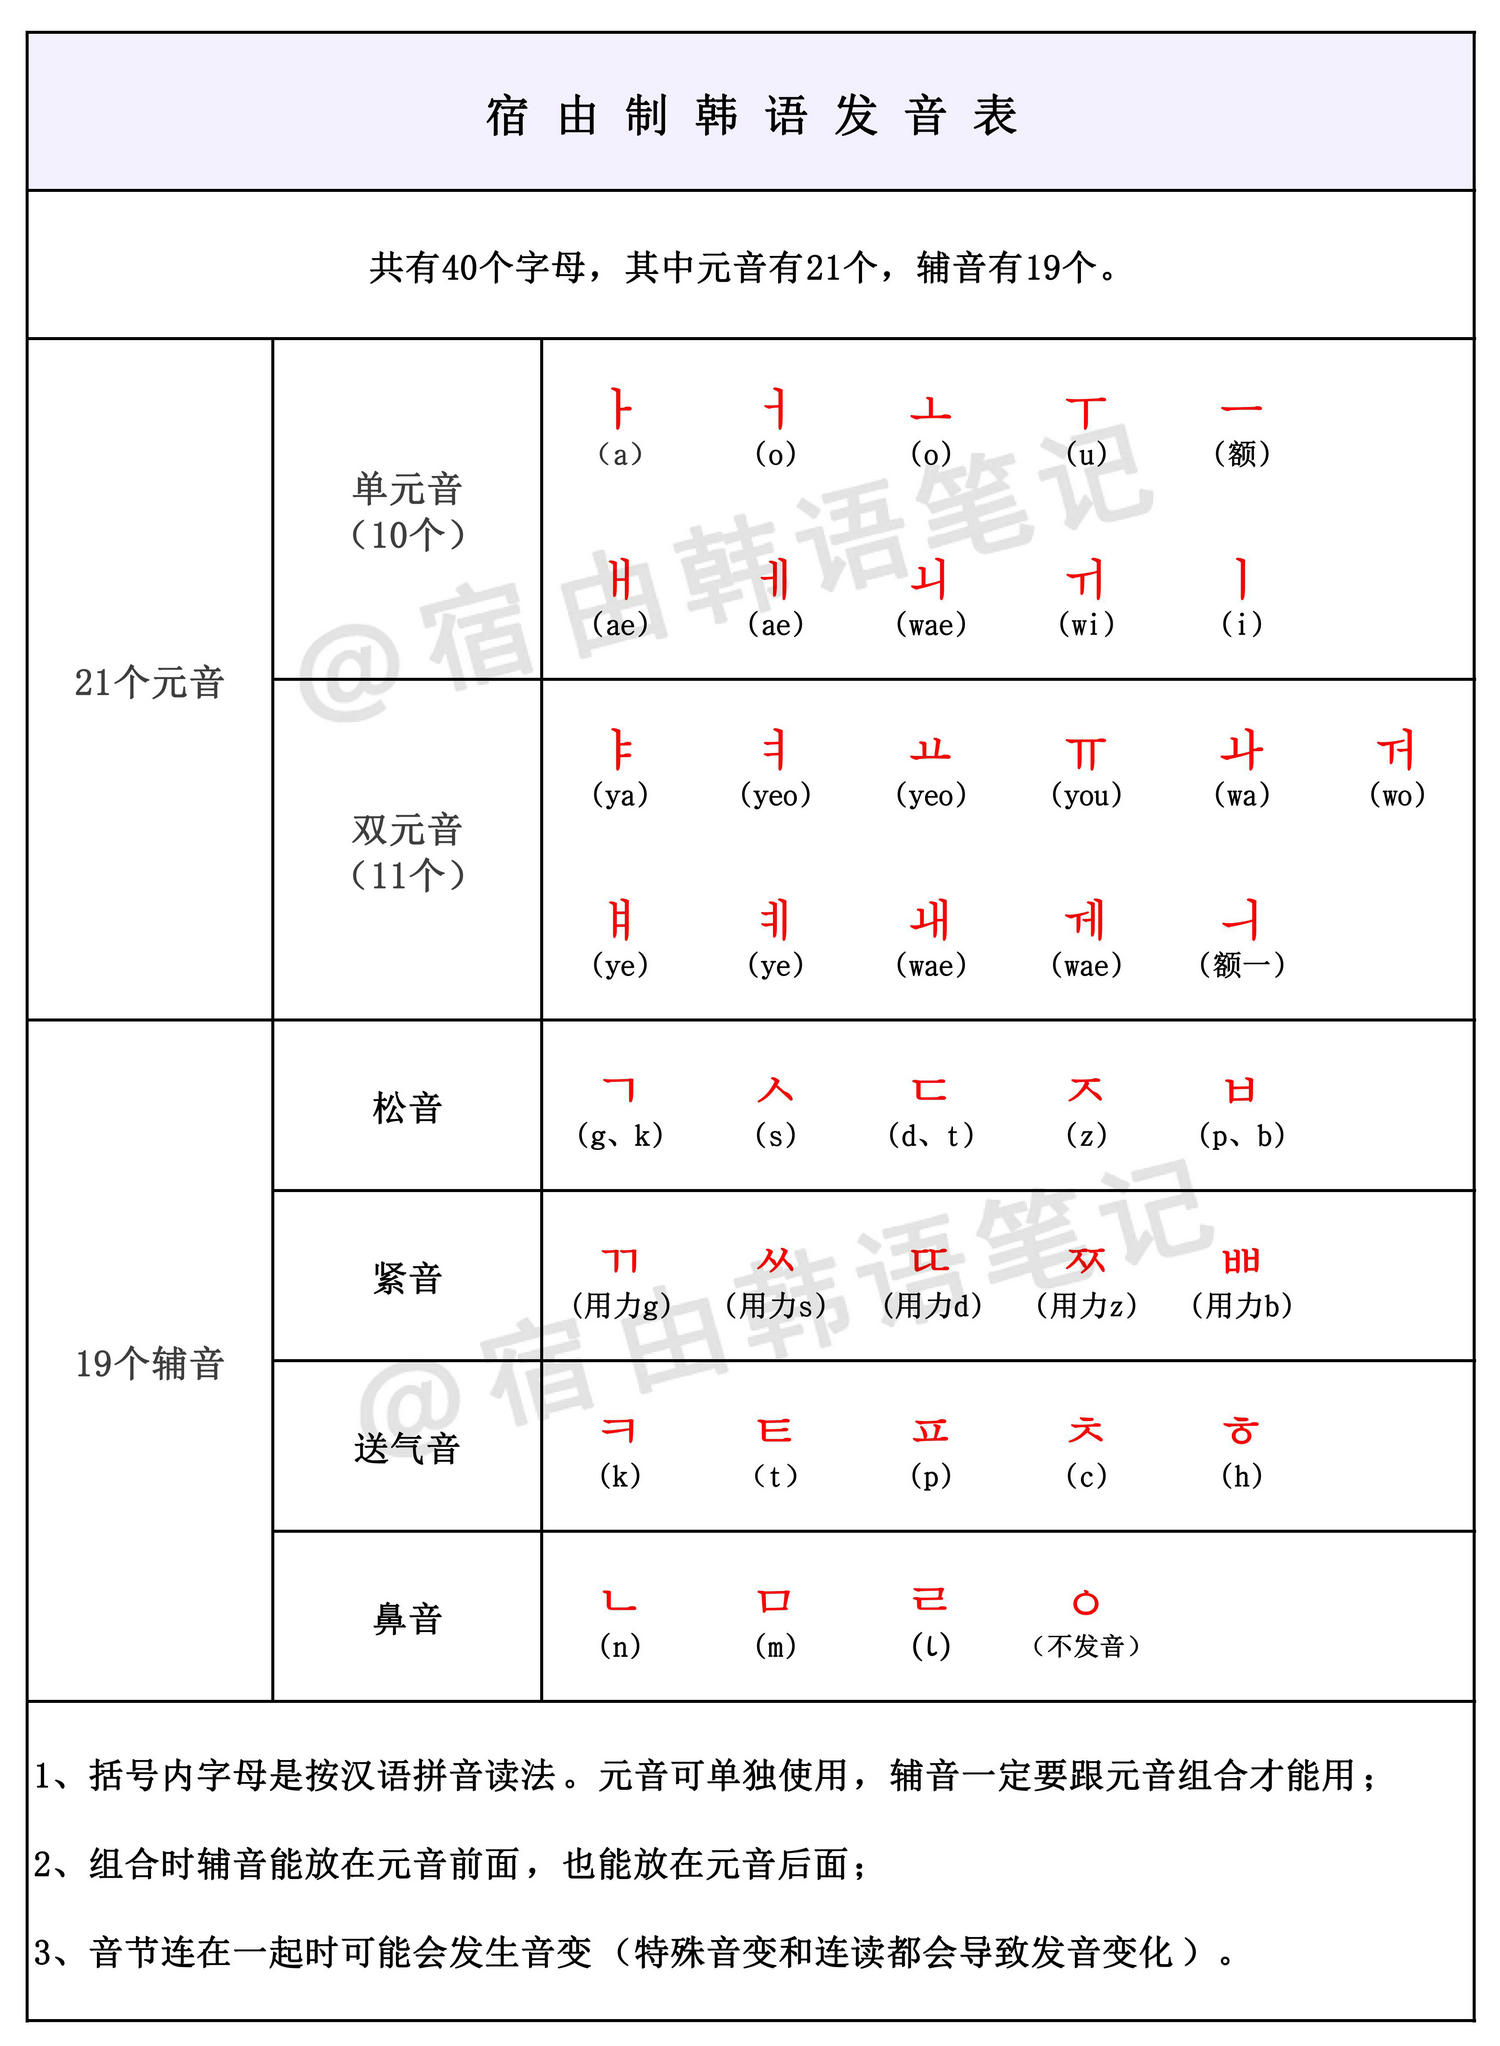 韩语发音表谐音图片